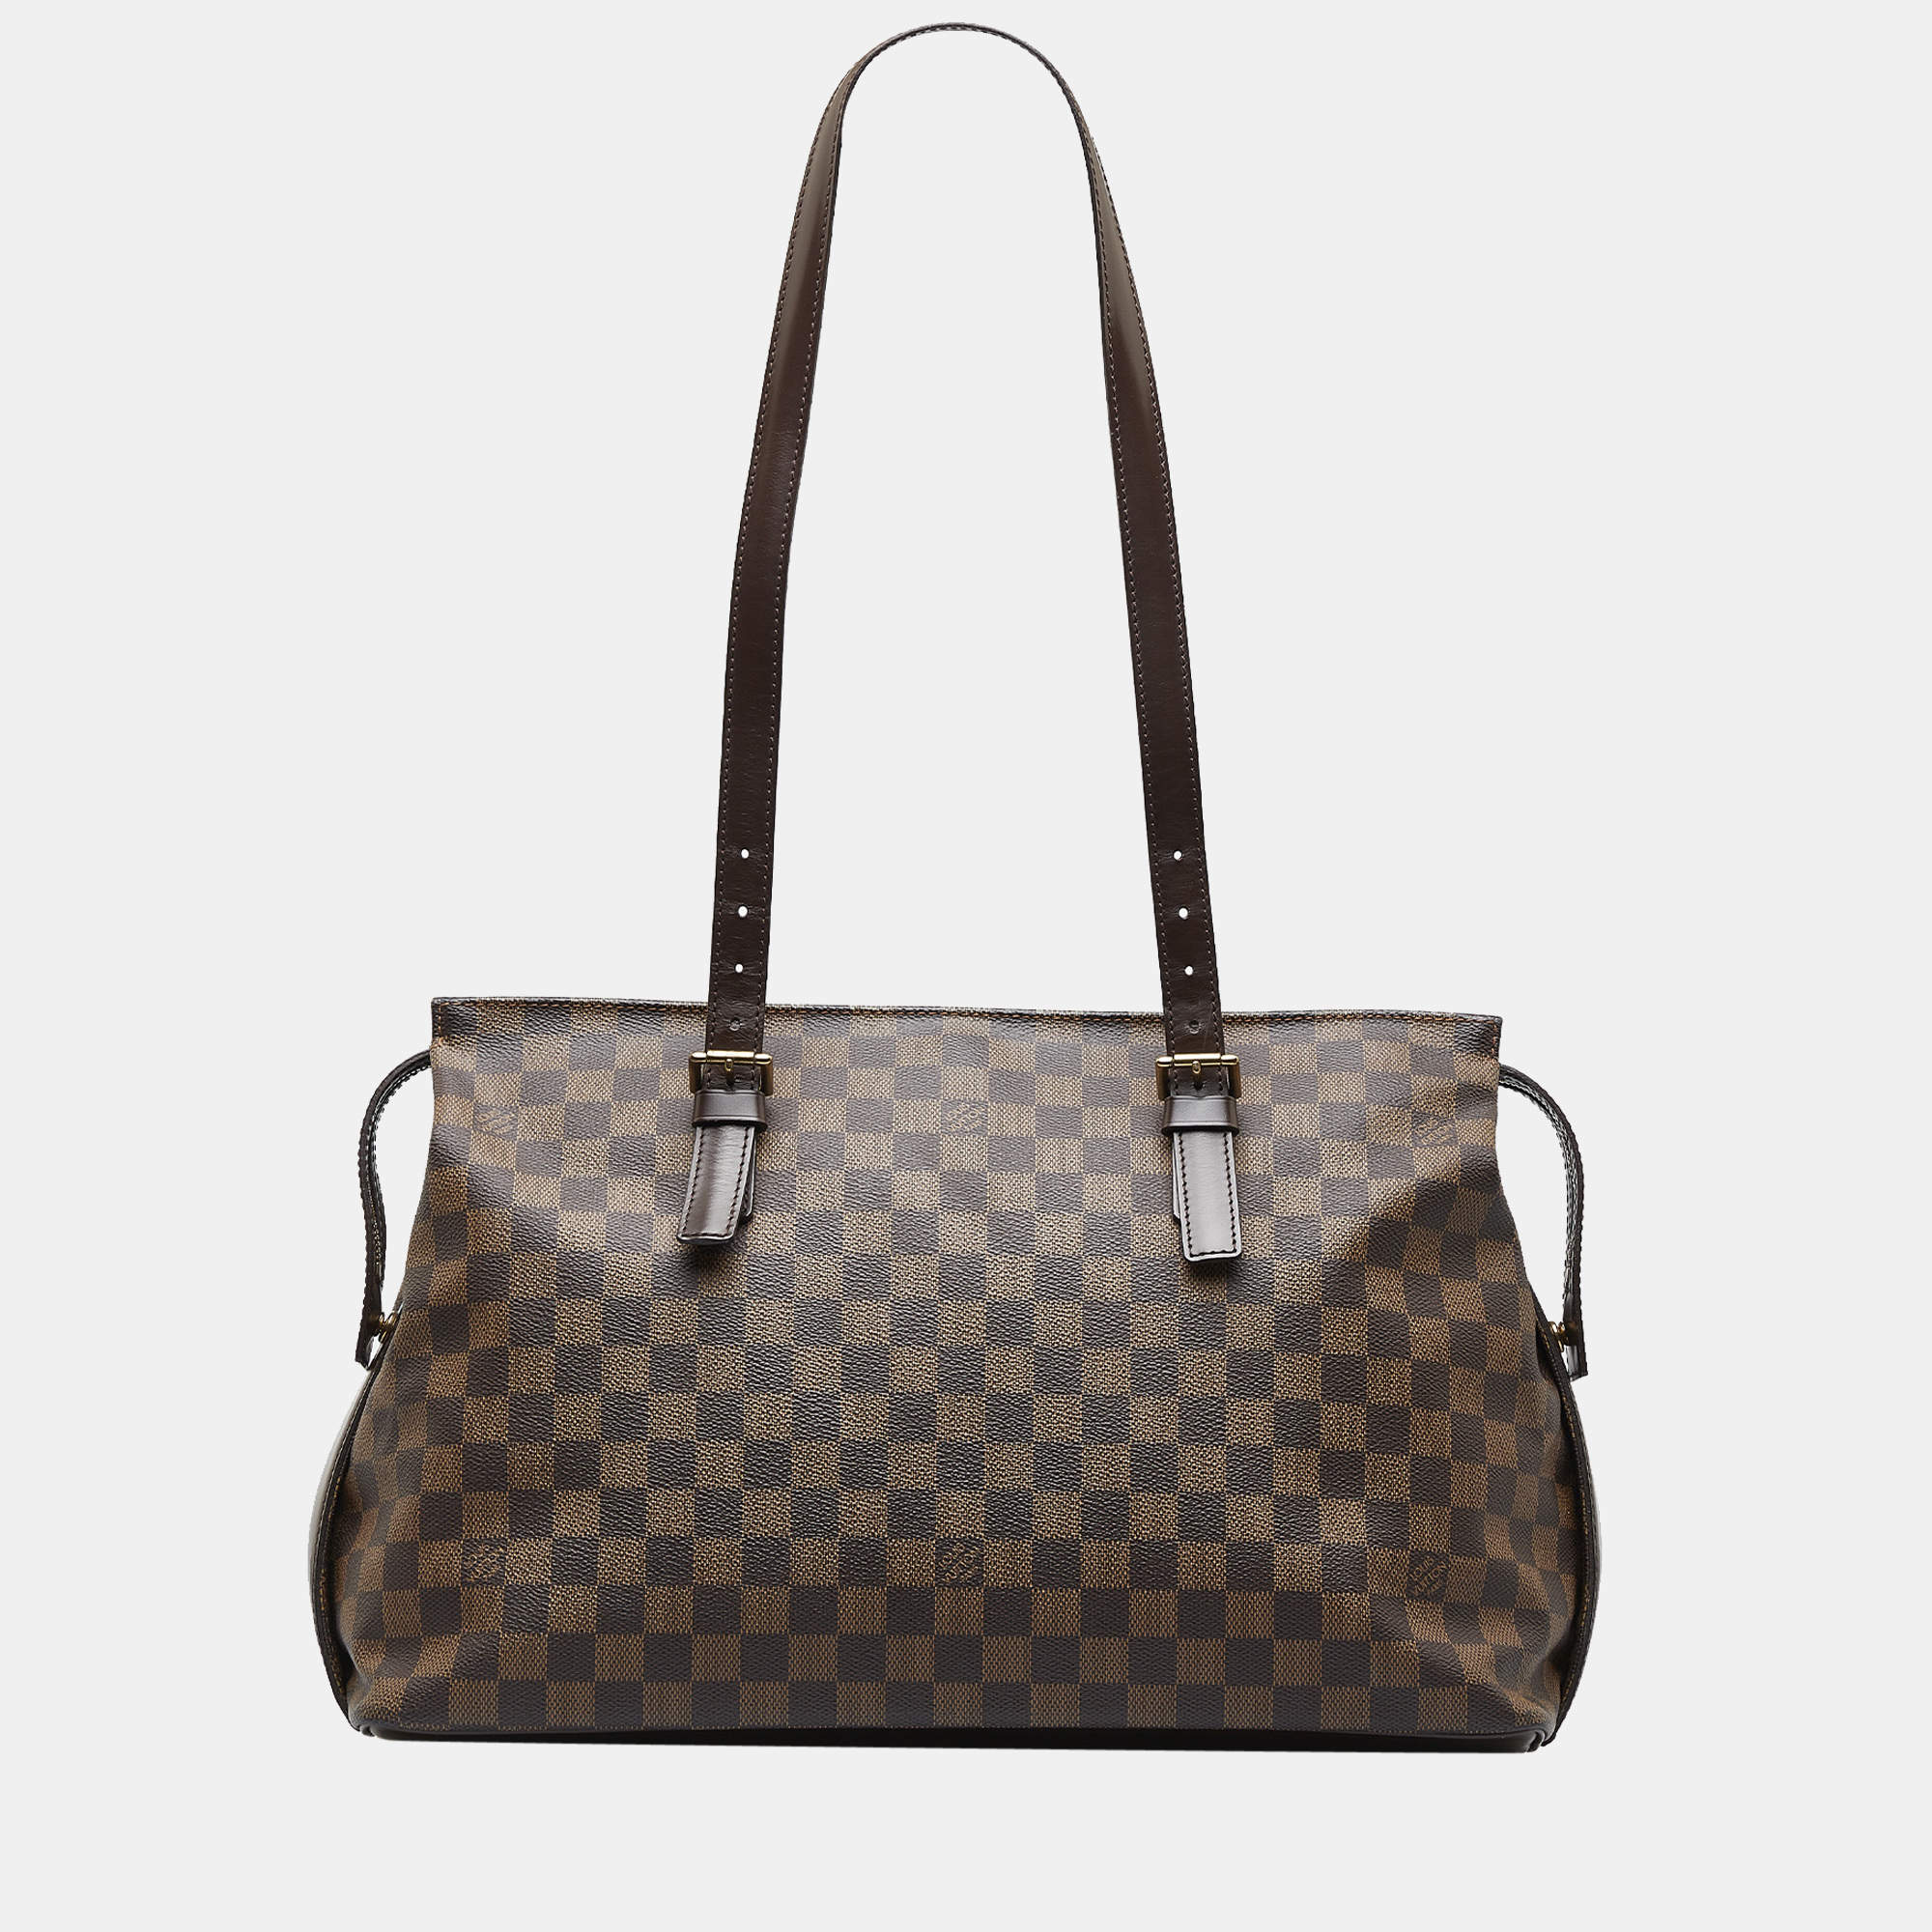 Louis Vuitton, Bags, Authentic Louis Vuitton Chelsea Damier Ebene Bag